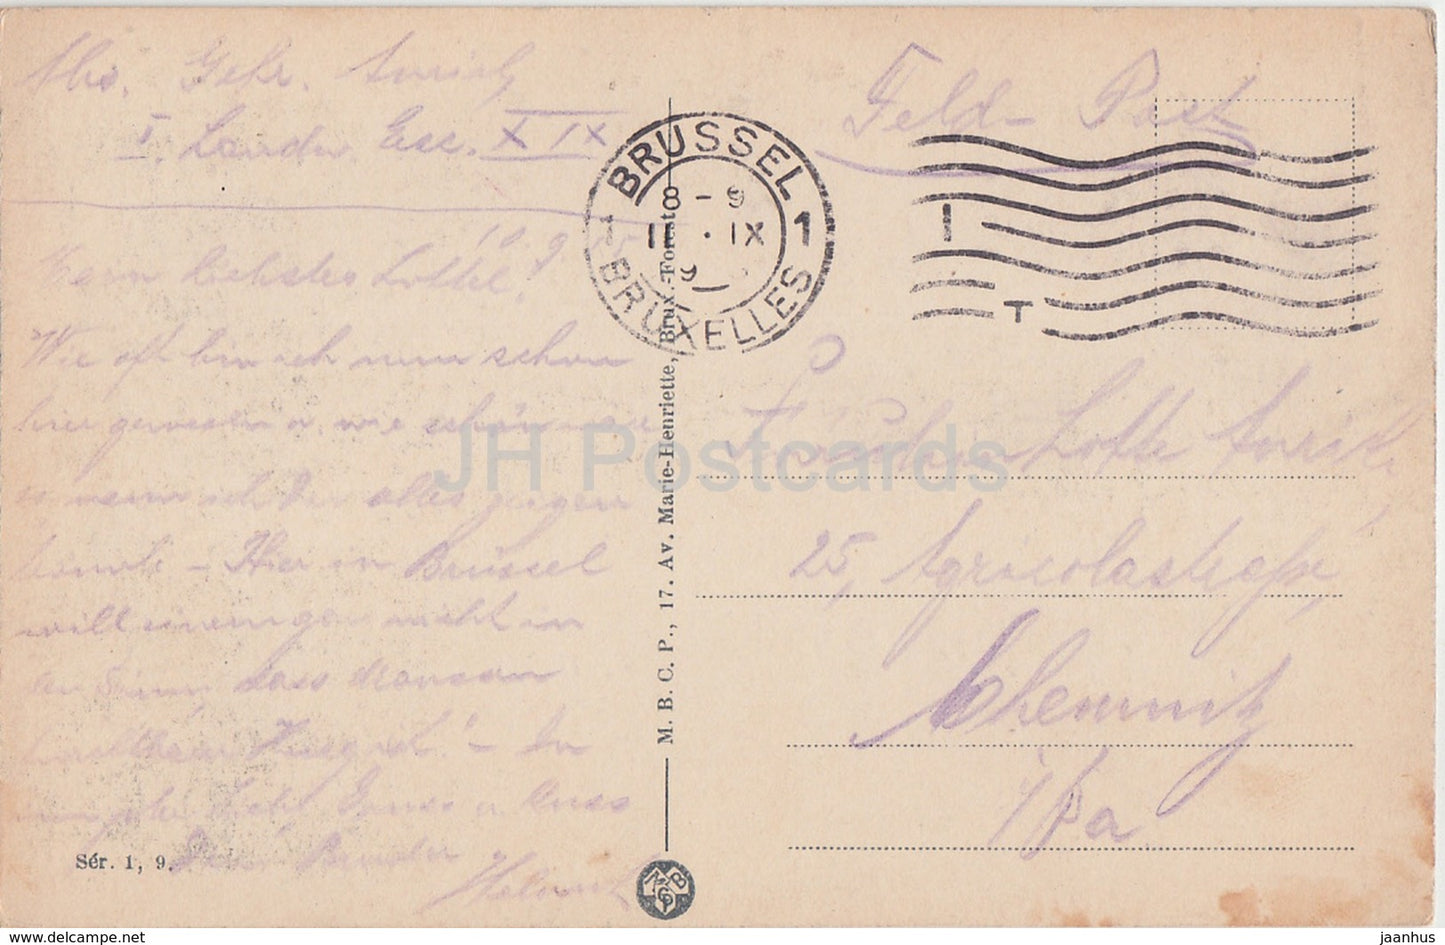 Bruxelles - Bruxelles - Les Arcades du Cinquantenaire - Feldpost - carte postale ancienne - 1915 - Belgique - utilisé